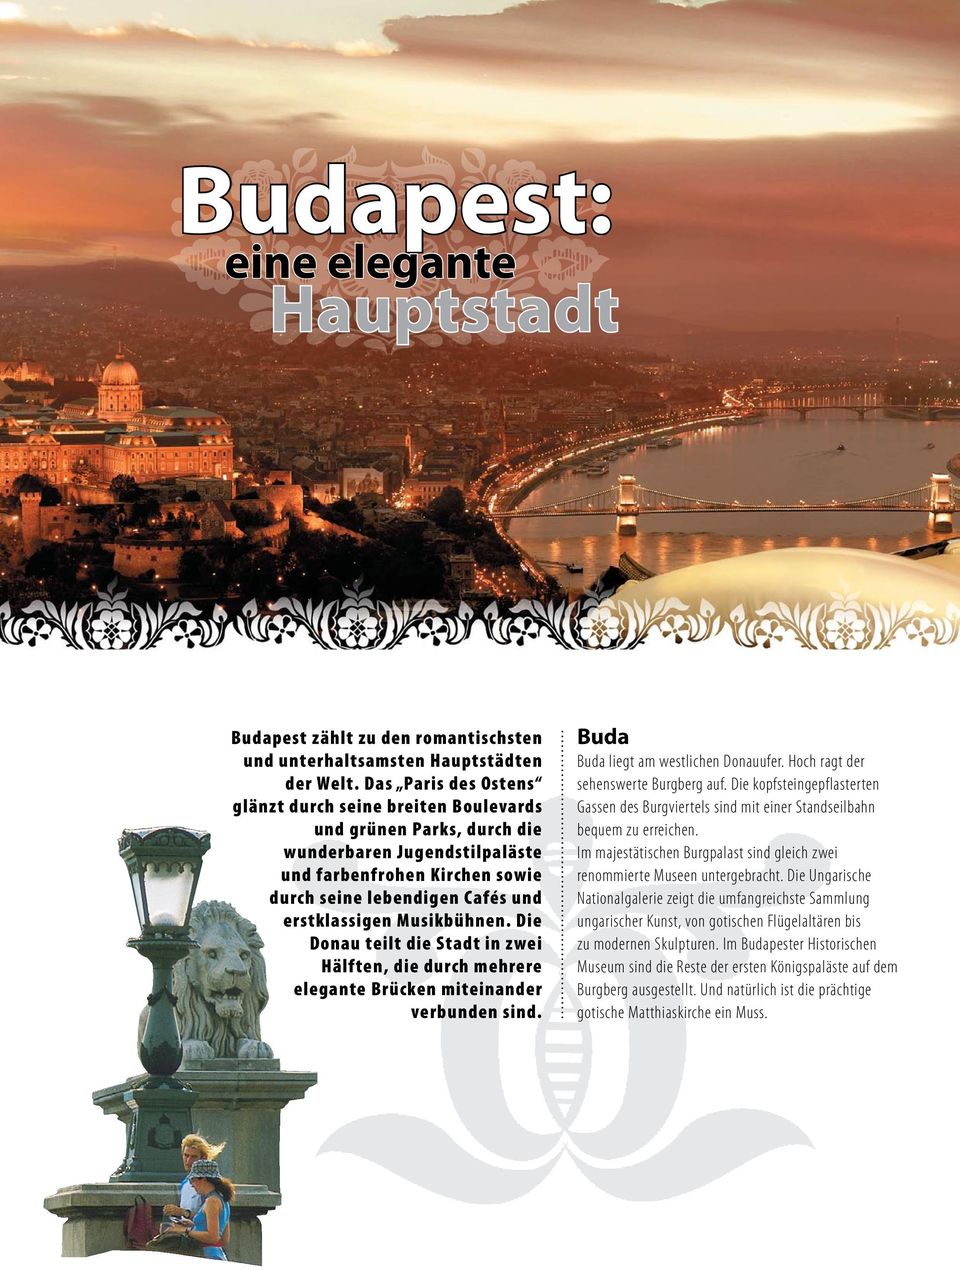 Musikbühnen. Die Donau teilt die Stadt in zwei Hälften, die durch mehrere elegante Brücken miteinander verbunden sind. Buda Buda liegt am westlichen Donauufer. Hoch ragt der sehenswerte Burgberg auf.